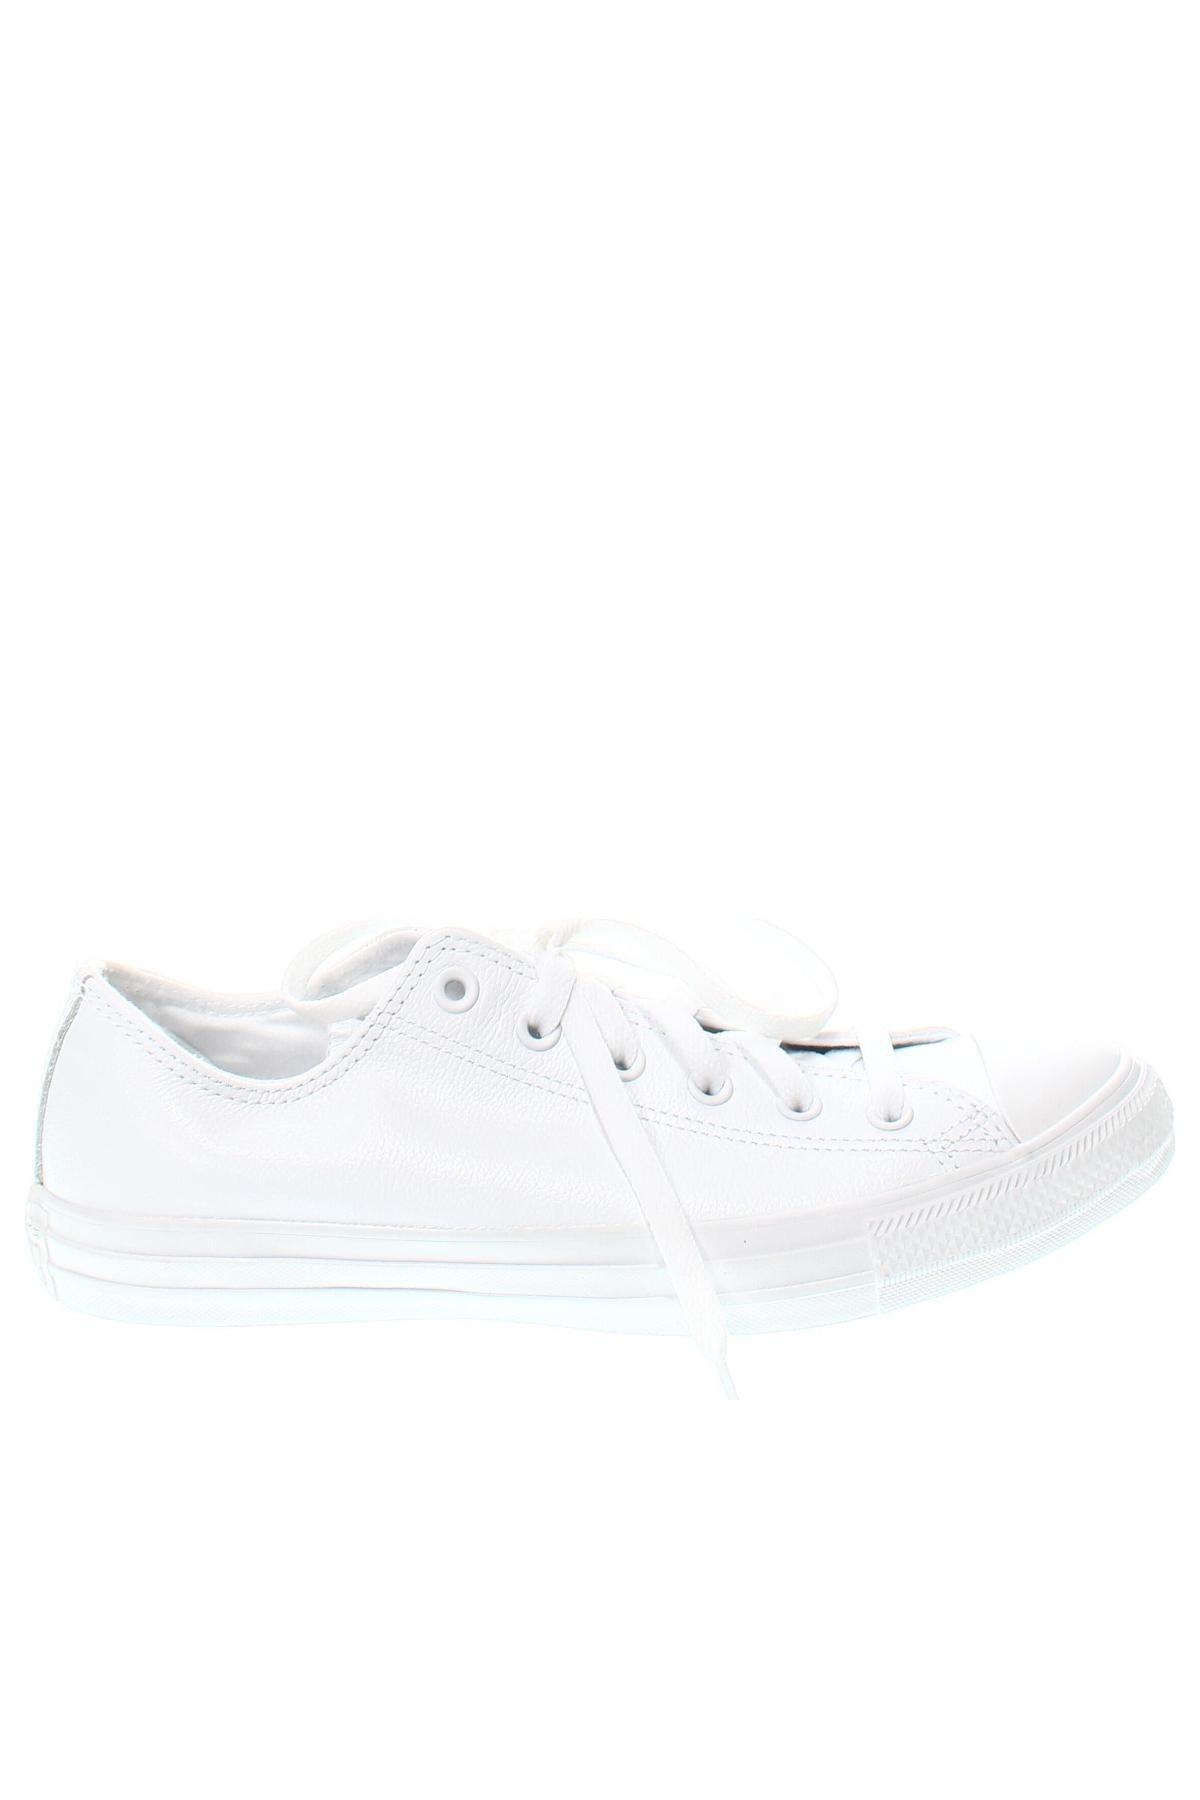 Παπούτσια Converse, Μέγεθος 41, Χρώμα Λευκό, Τιμή 97,94 €